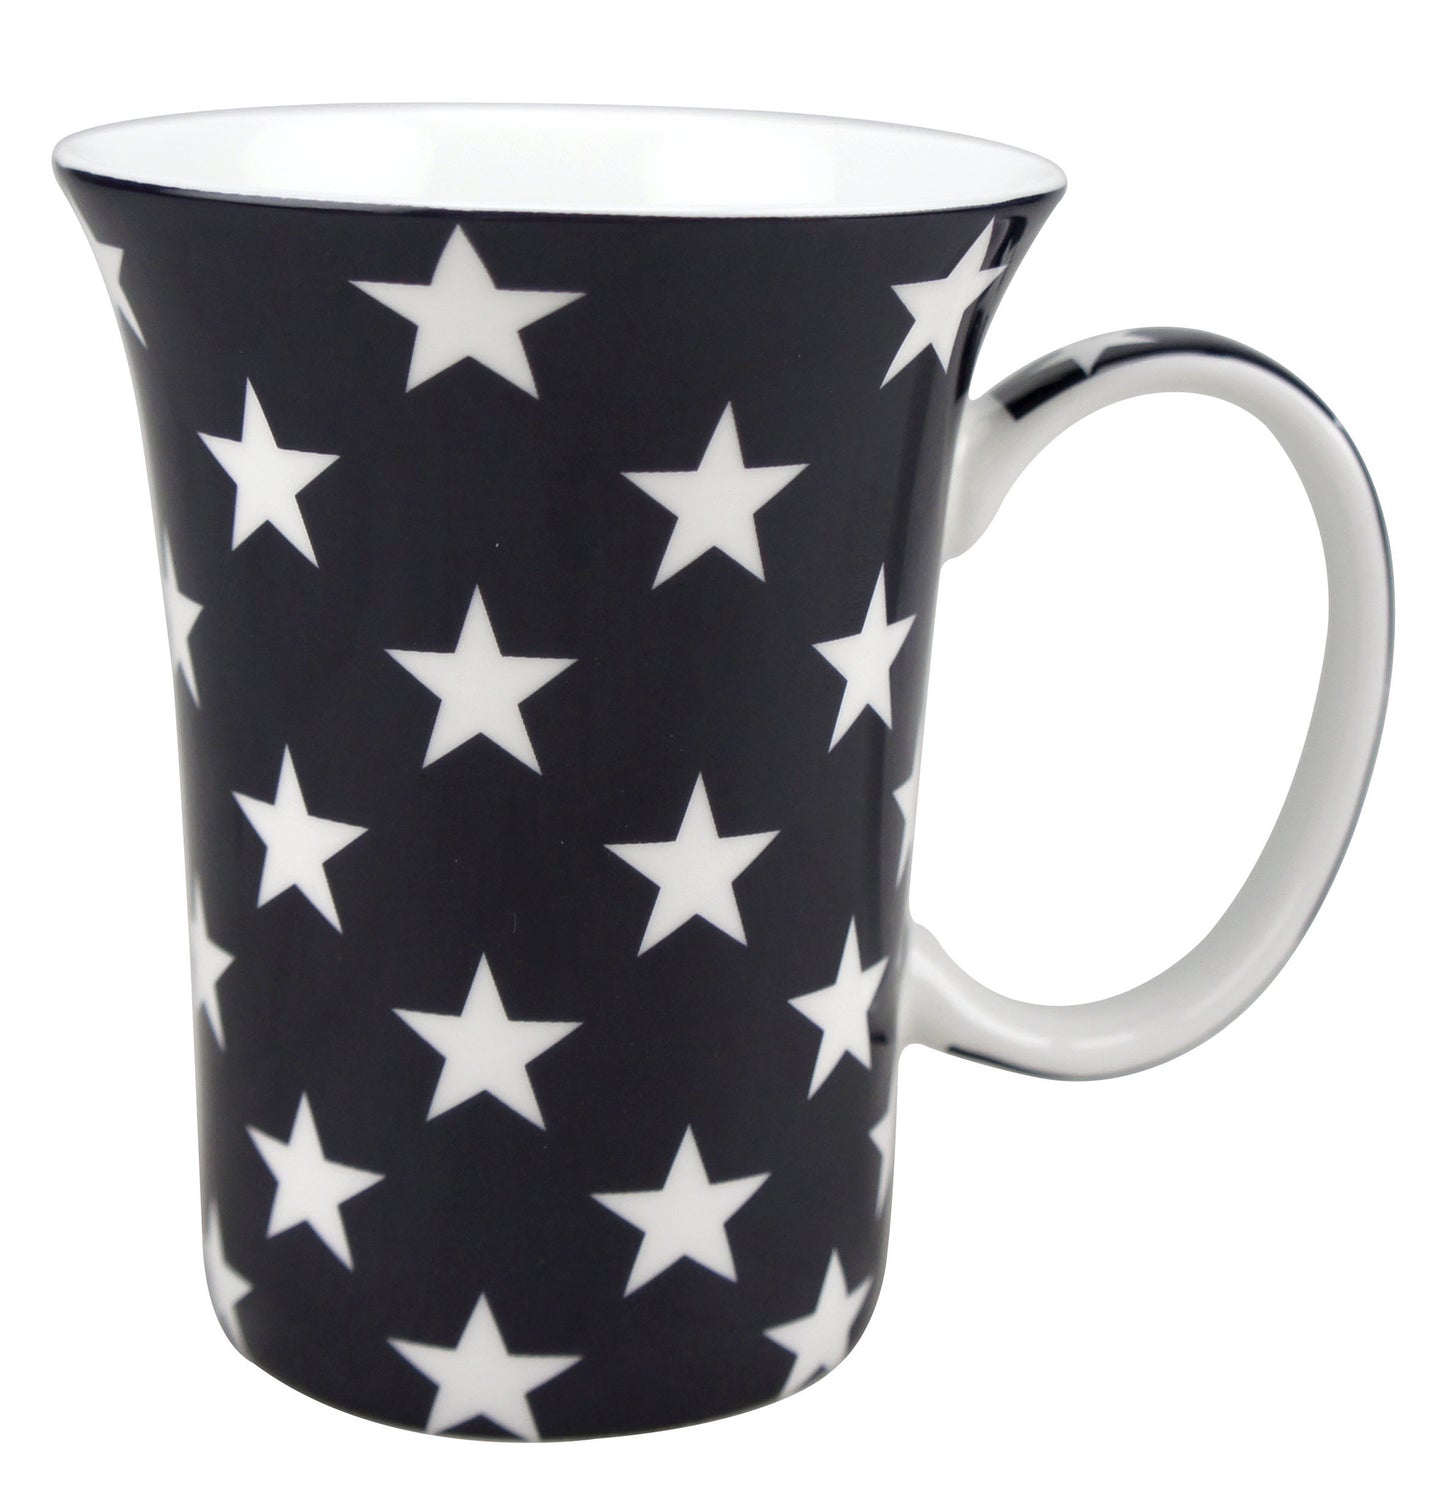 'Stars & Stripes' Mug Pair